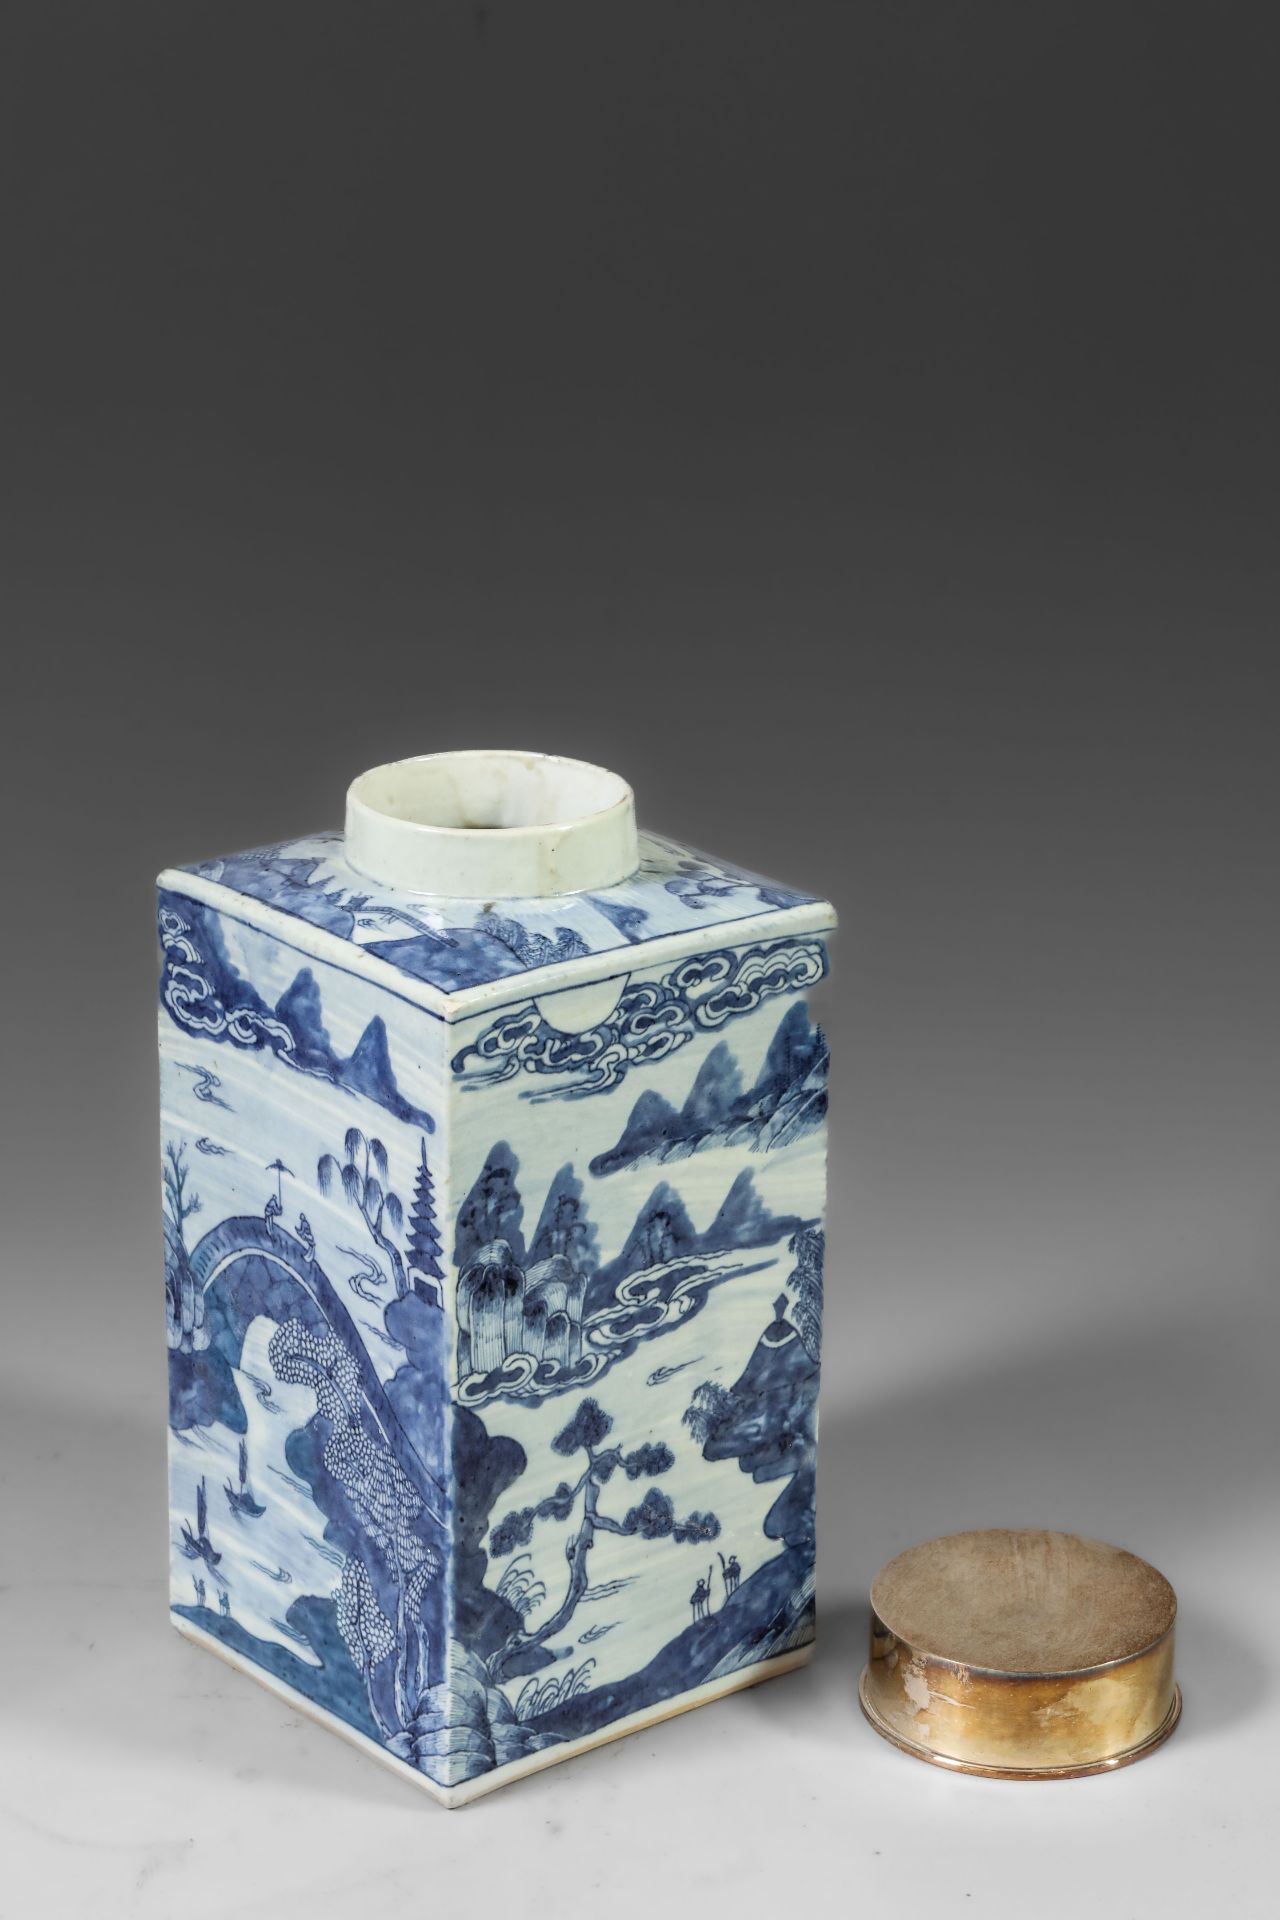 Suite de neuf pots à thé quadrangulaire en porcelaine blanche décoré en bleu sous couverte de - Image 5 of 47